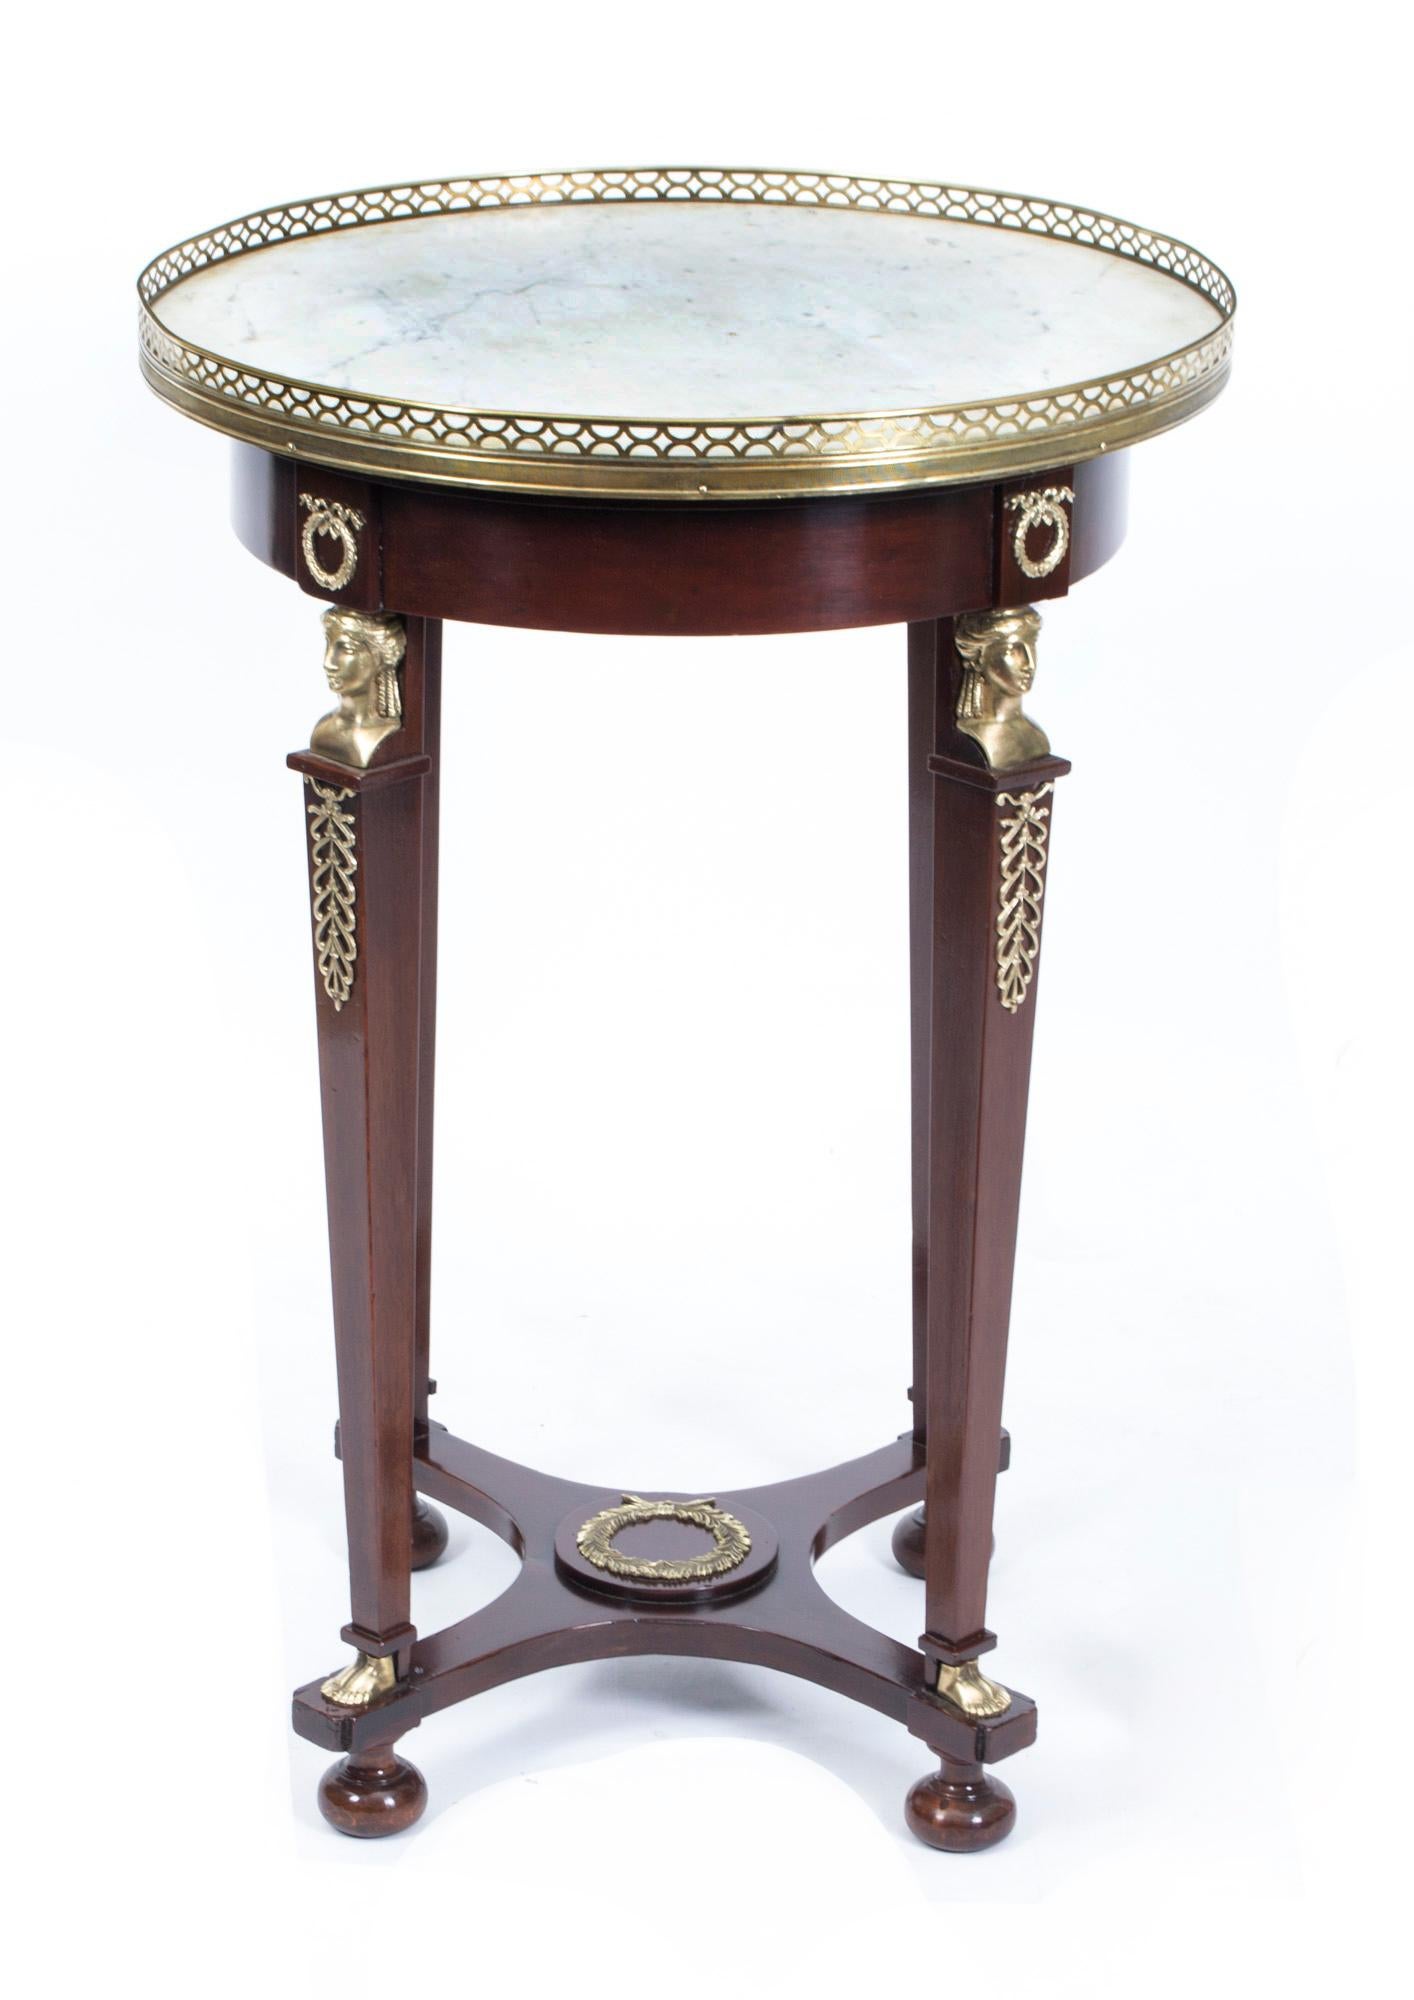 Il s'agit d'une belle table centrale circulaire ancienne de style Empire français avec une décoration ornementale en bronze doré typique de la période Empire et un beau plateau en marbre blanc 